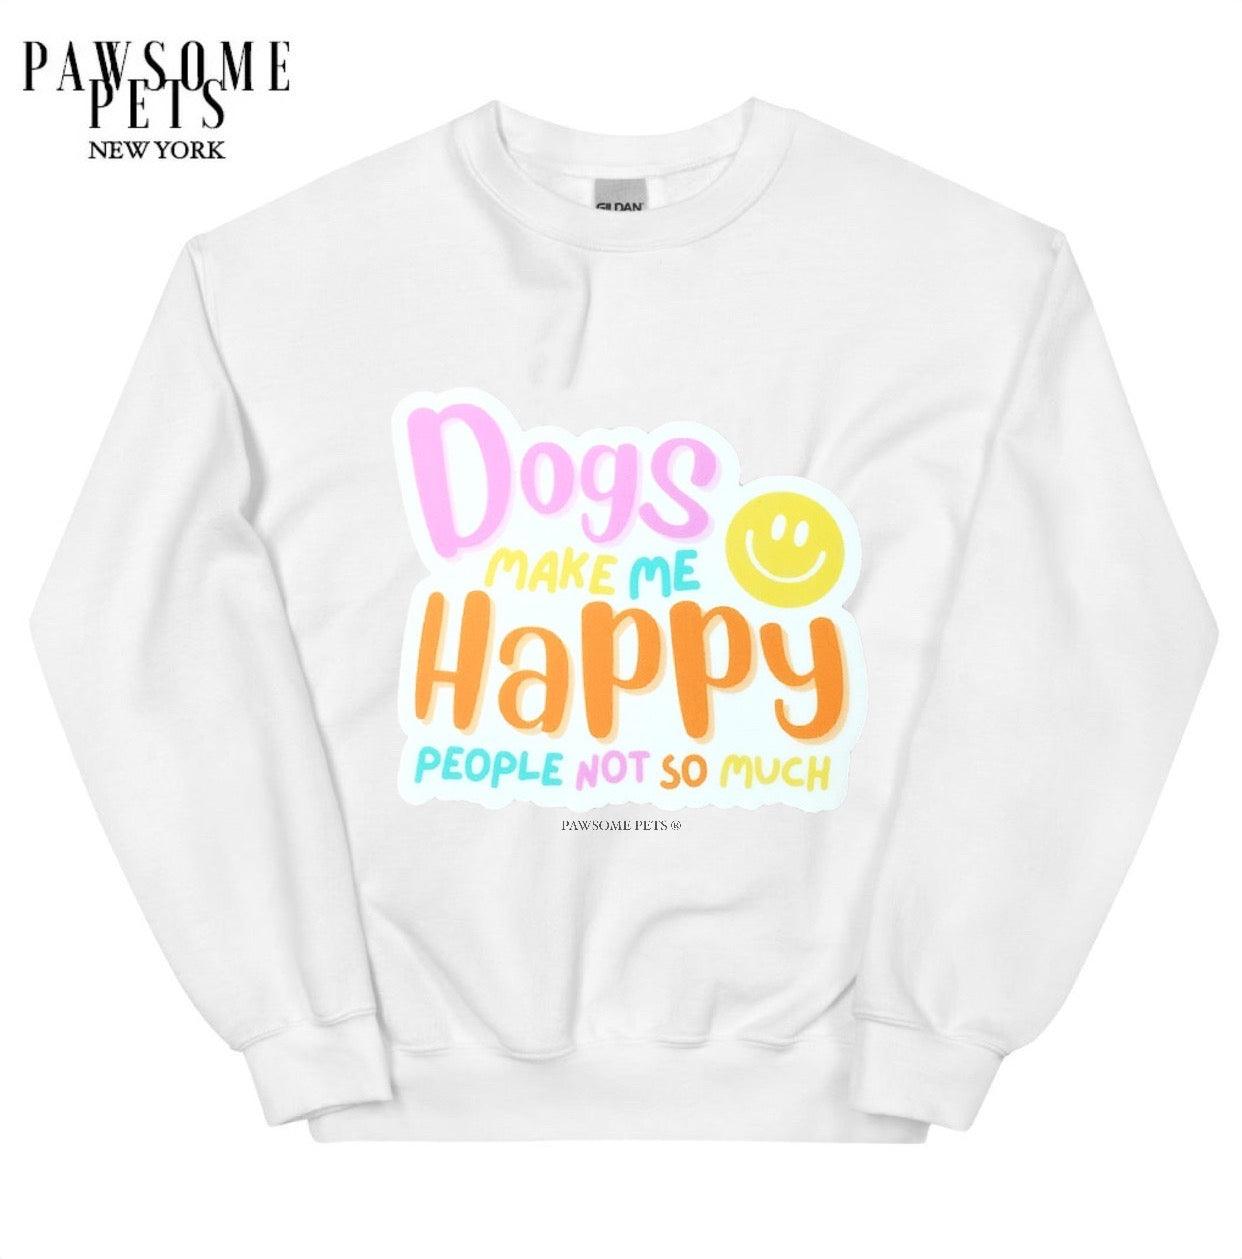 SWEATSHIRT - DOGS MAKE ME HAPPY - Pawsomepetsnewyork